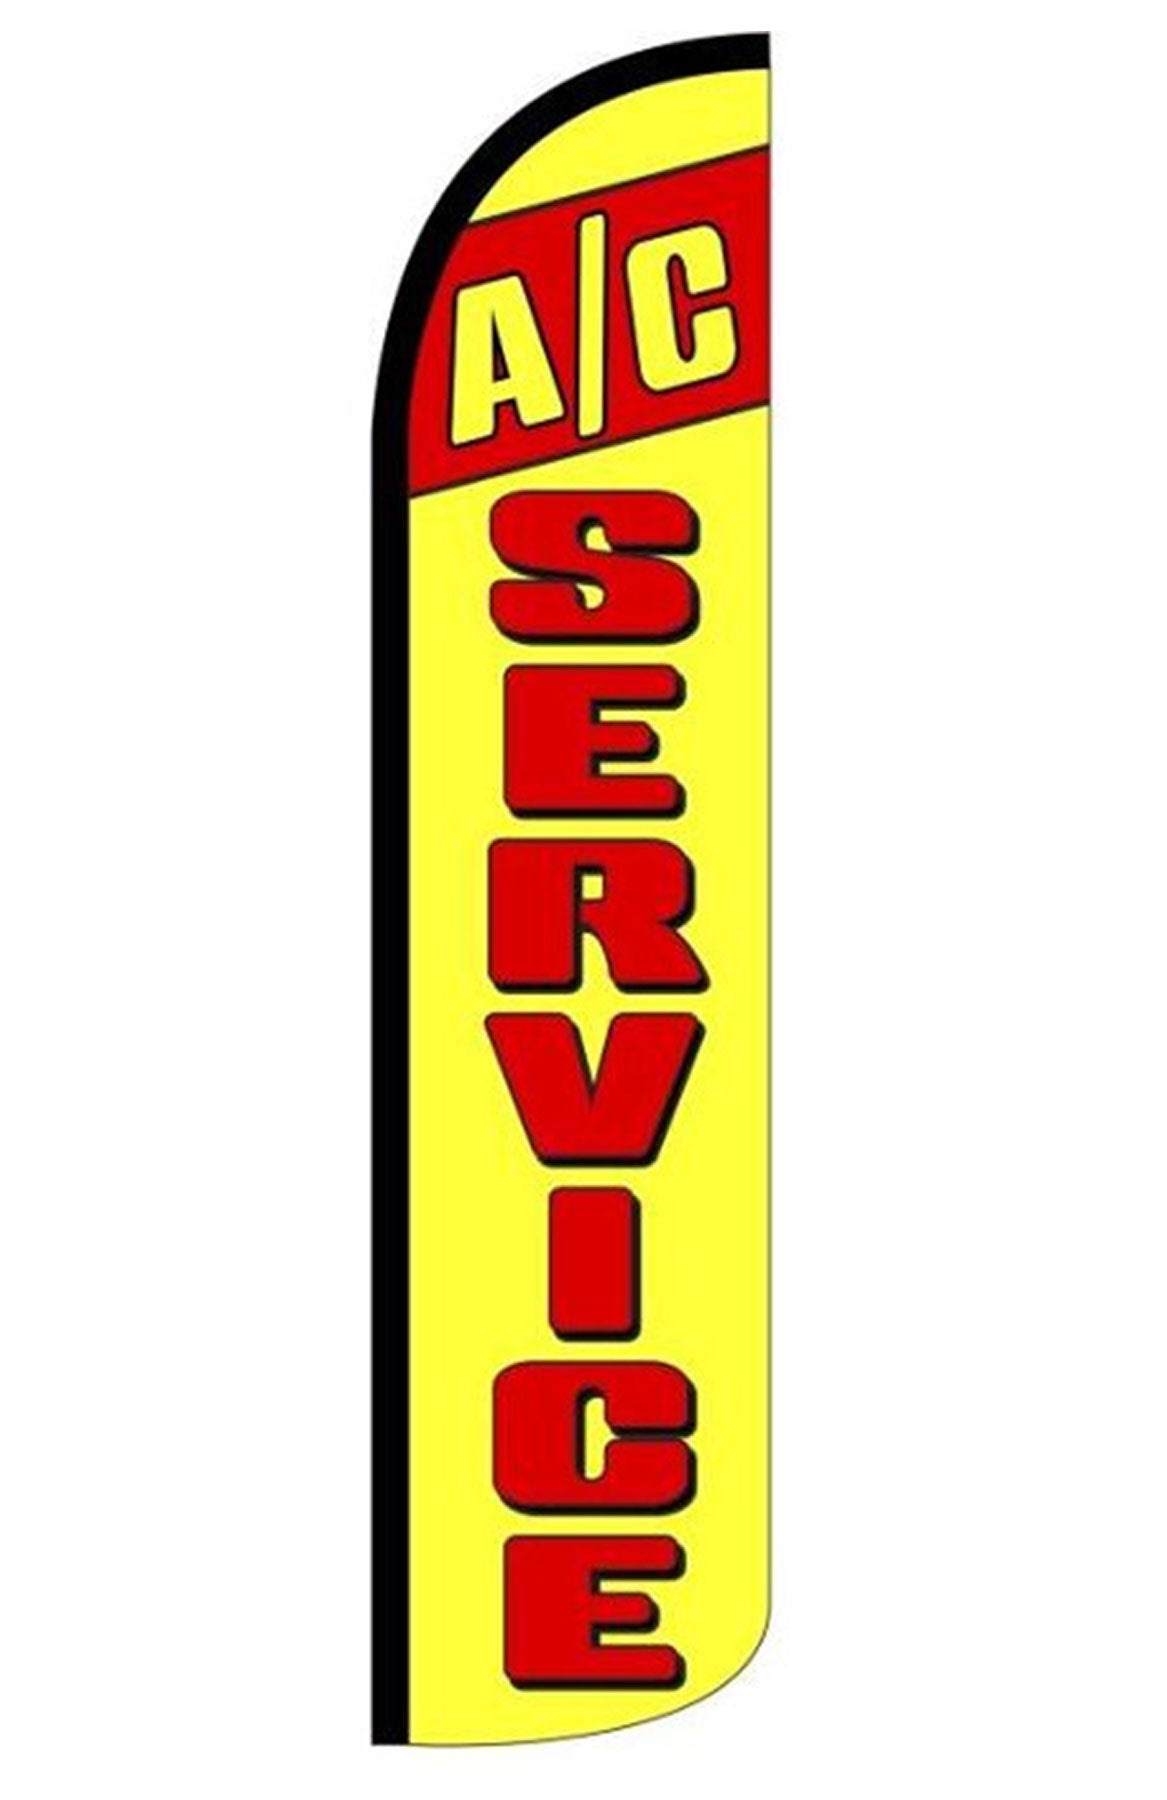 A/C SERVICES